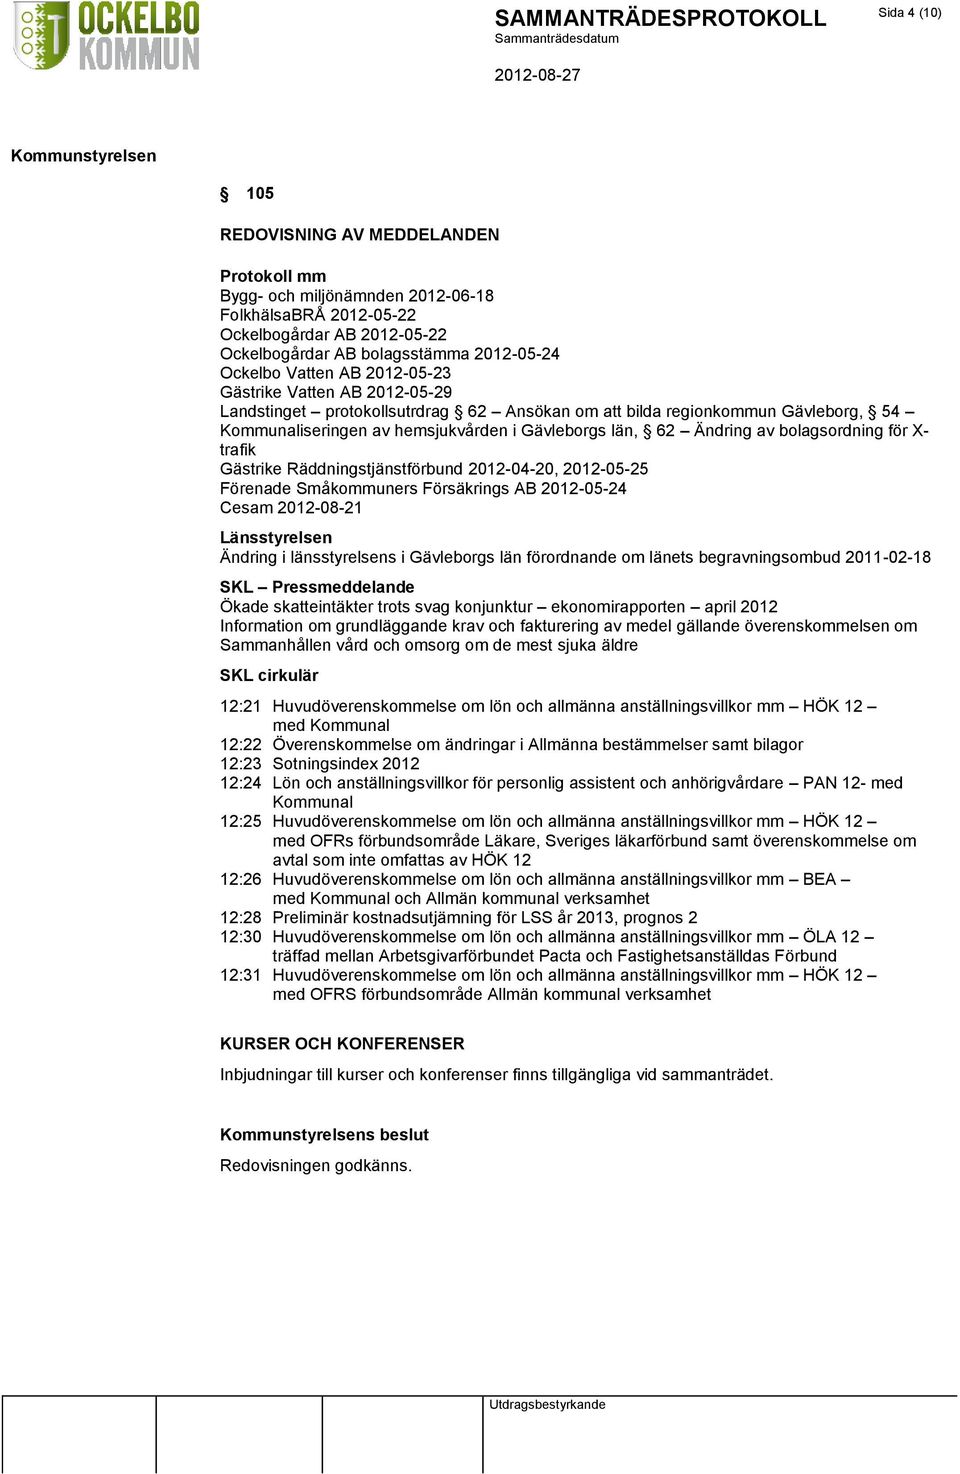 bolagsordning för X- trafik Gästrike Räddningstjänstförbund 2012-04-20, 2012-05-25 Förenade Småkommuners Försäkrings AB 2012-05-24 Cesam 2012-08-21 Länsstyrelsen Ändring i länsstyrelsens i Gävleborgs